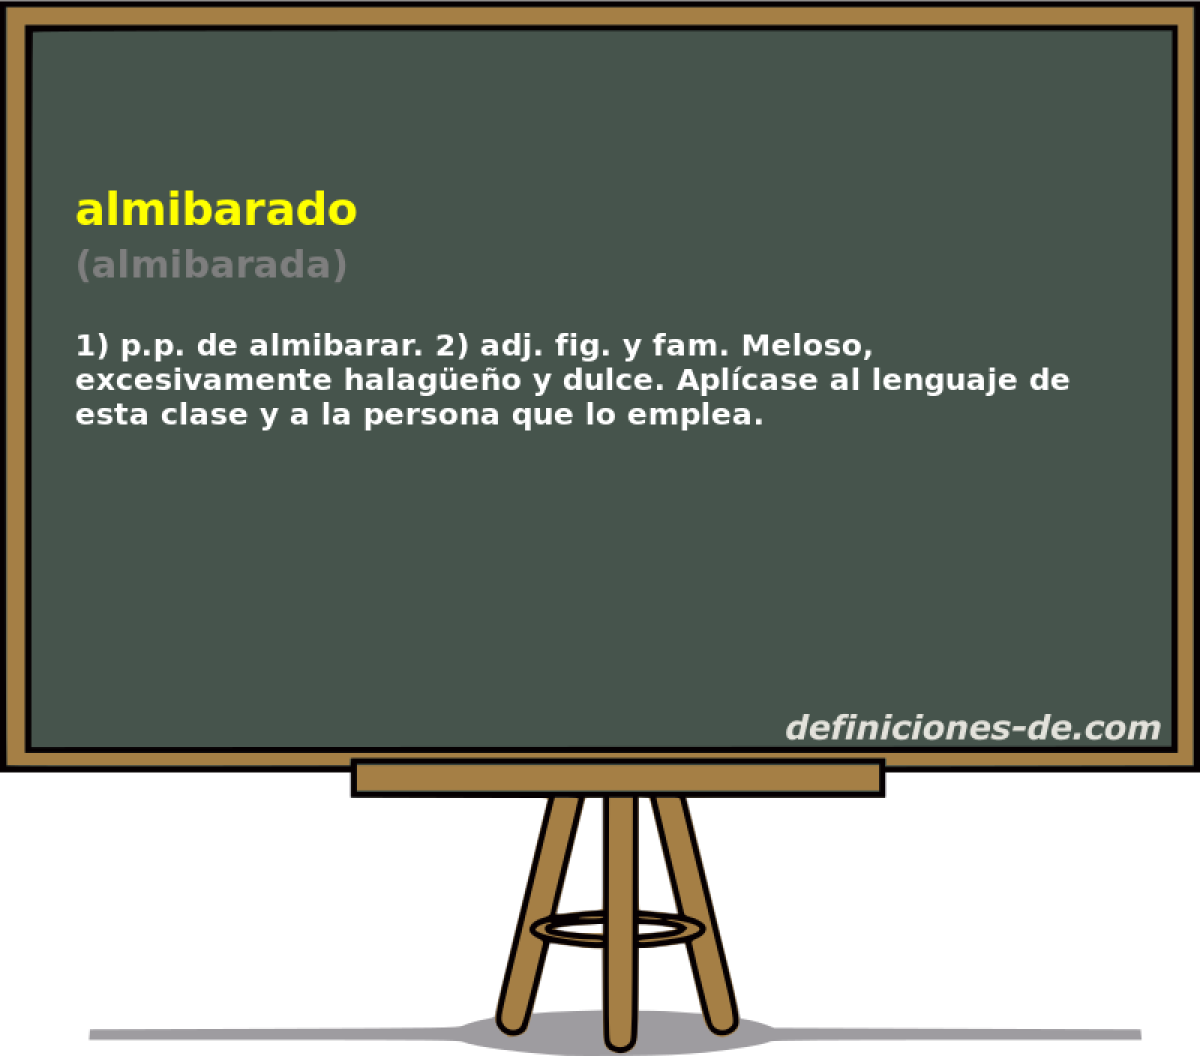 almibarado (almibarada)